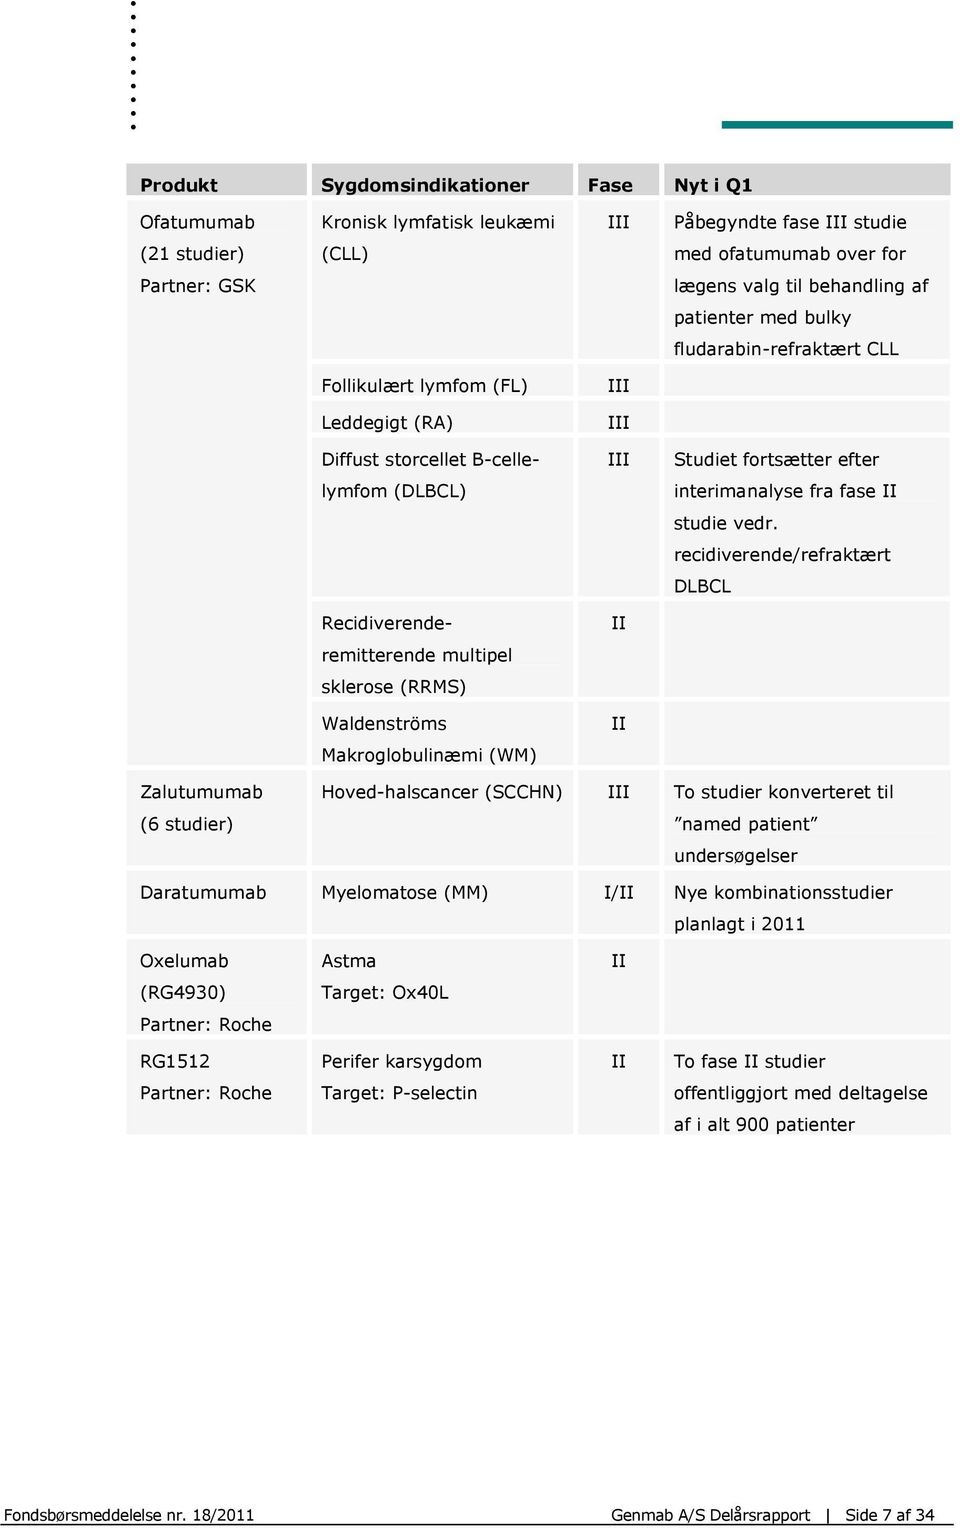 vedr. recidiverende/refraktært DLBCL Recidiverende- II remitterende multipel sklerose (RRMS) Waldenströms II Makroglobulinæmi (WM) Zalutumumab (6 studier) Hoved-halscancer (SCCHN) III To studier